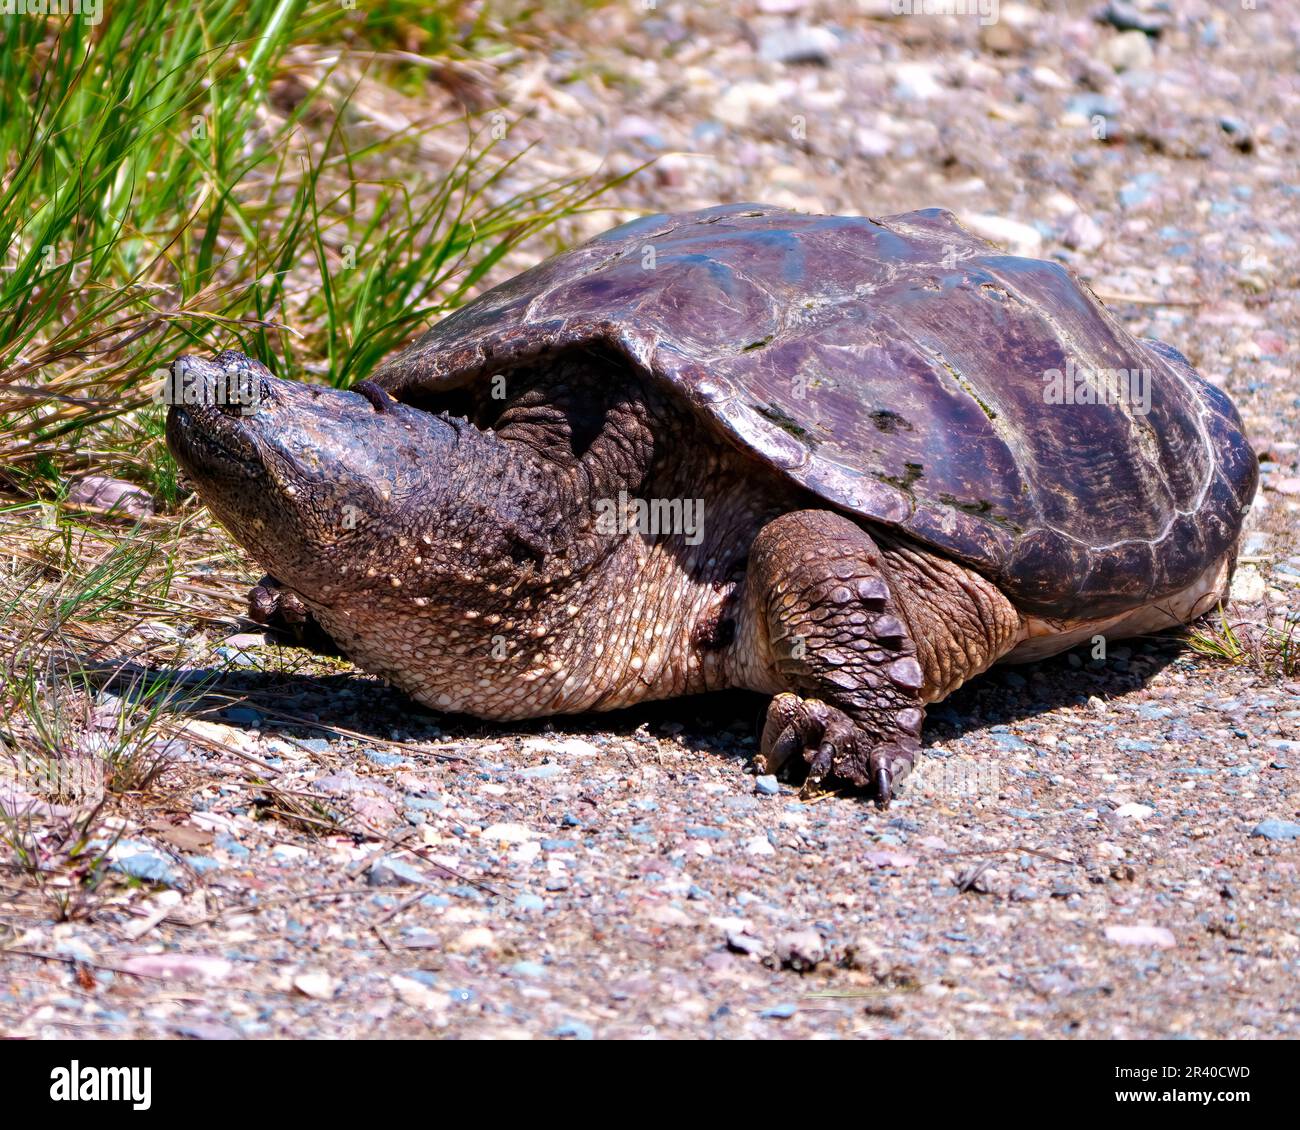 Schnappschuss aus nächster Nähe aus dem Wasser und auf der Suche nach einem geeigneten Nestplatz in seiner Umgebung und Umgebung. Schildkrötenbild. Stockfoto